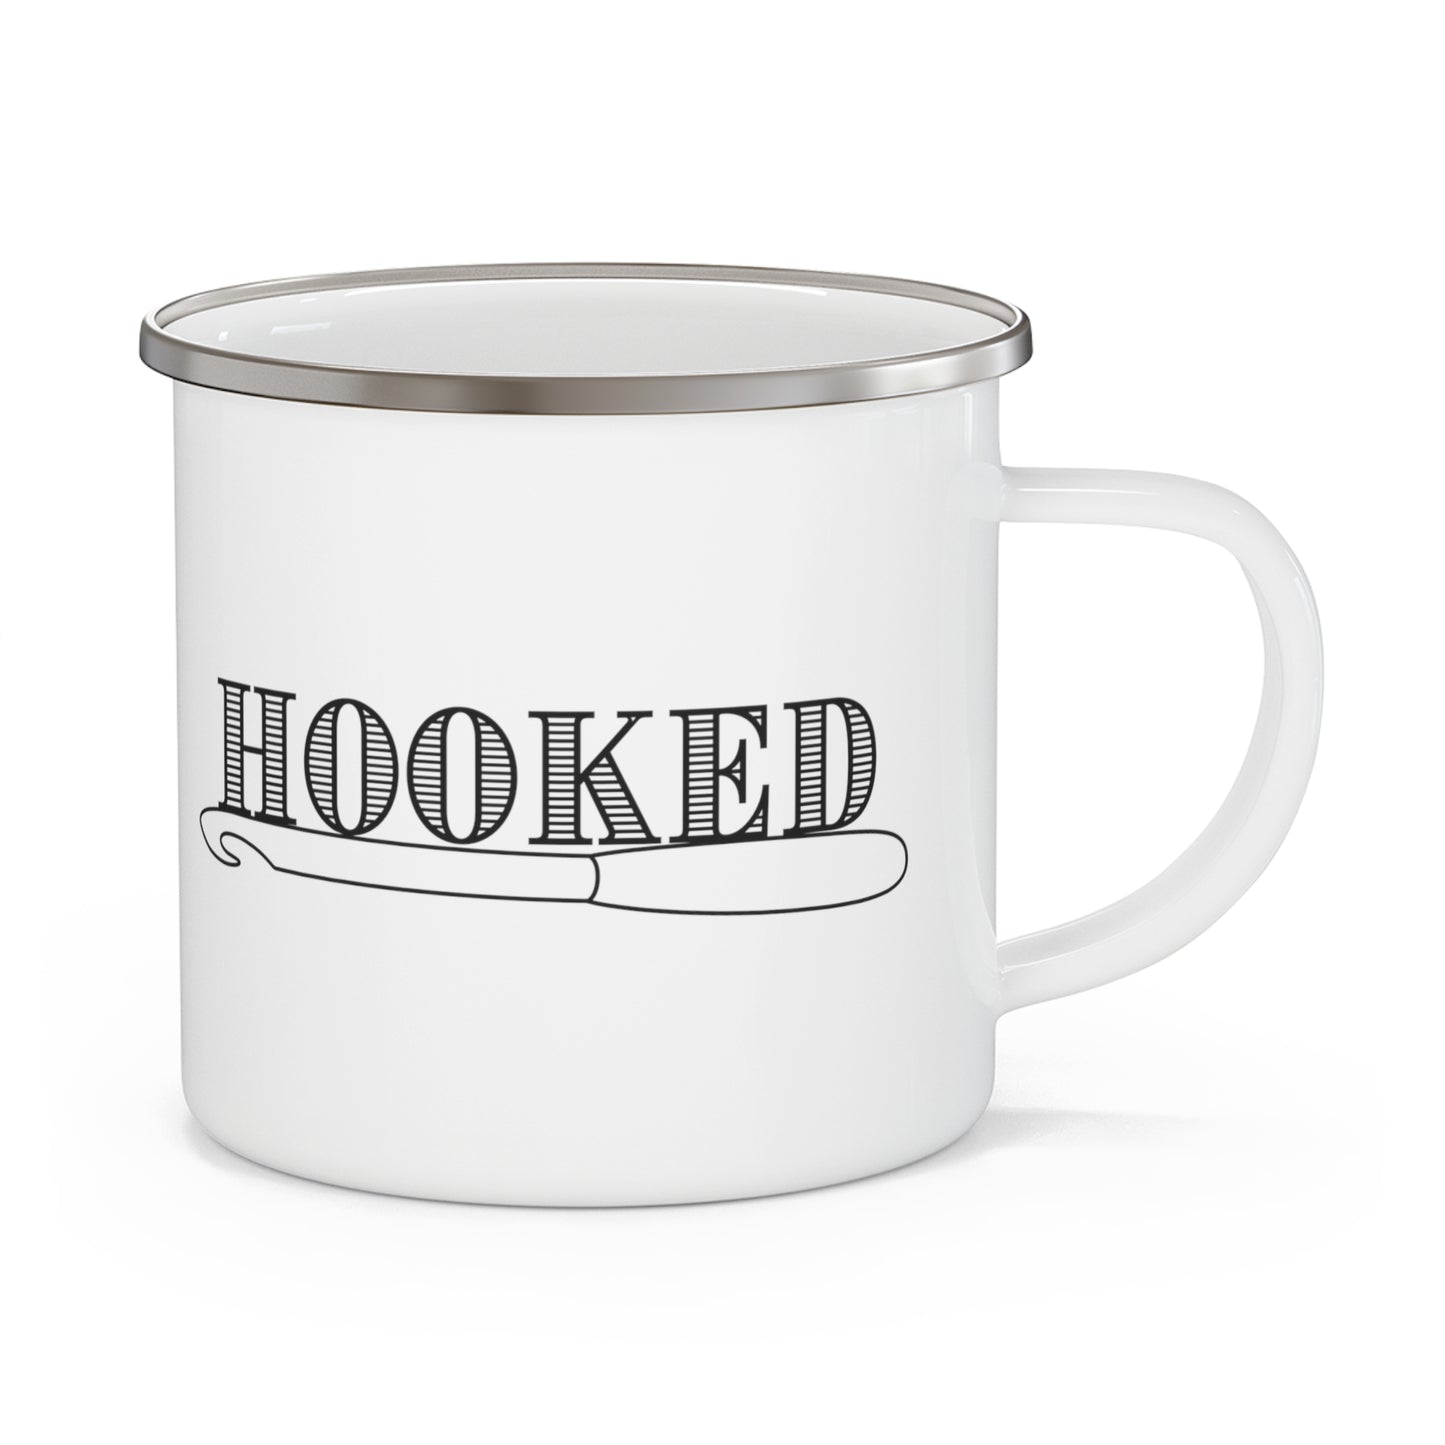 Hooked- Enamel Camping Mug